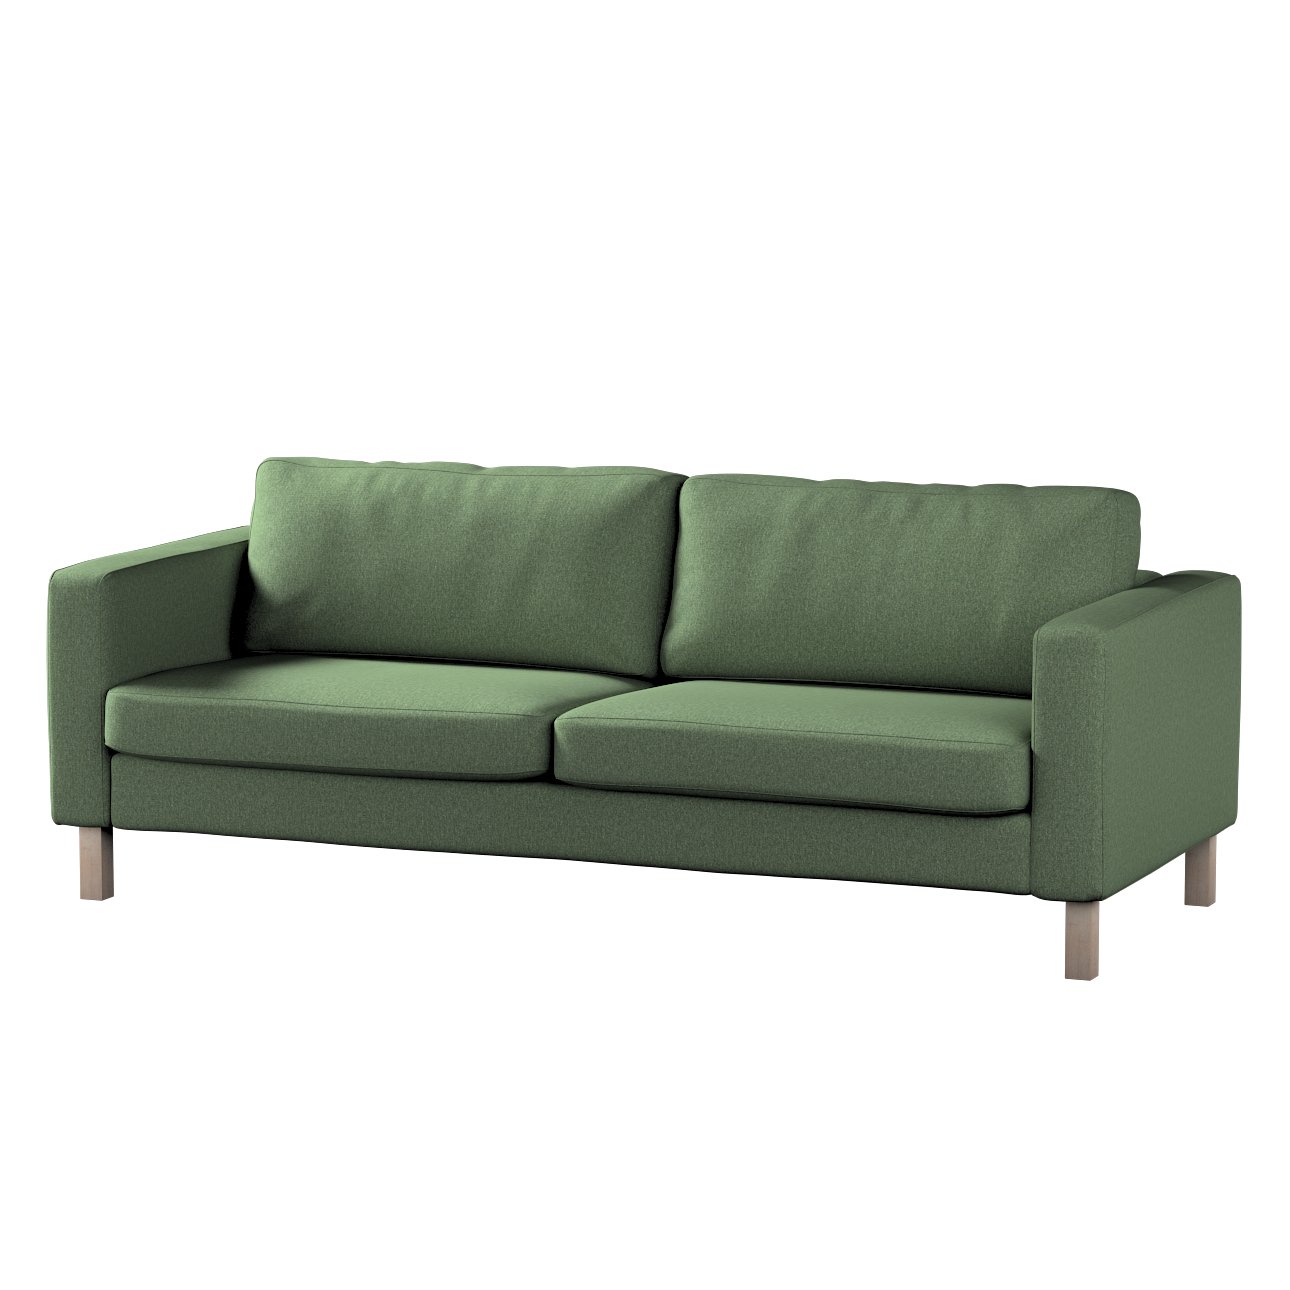 Dekoria Poťah na sedačku Karlstad (nerozkladací, 3-miestny, krátky), zelená, 204 x 89 x 64 cm, Amsterdam, 704-44